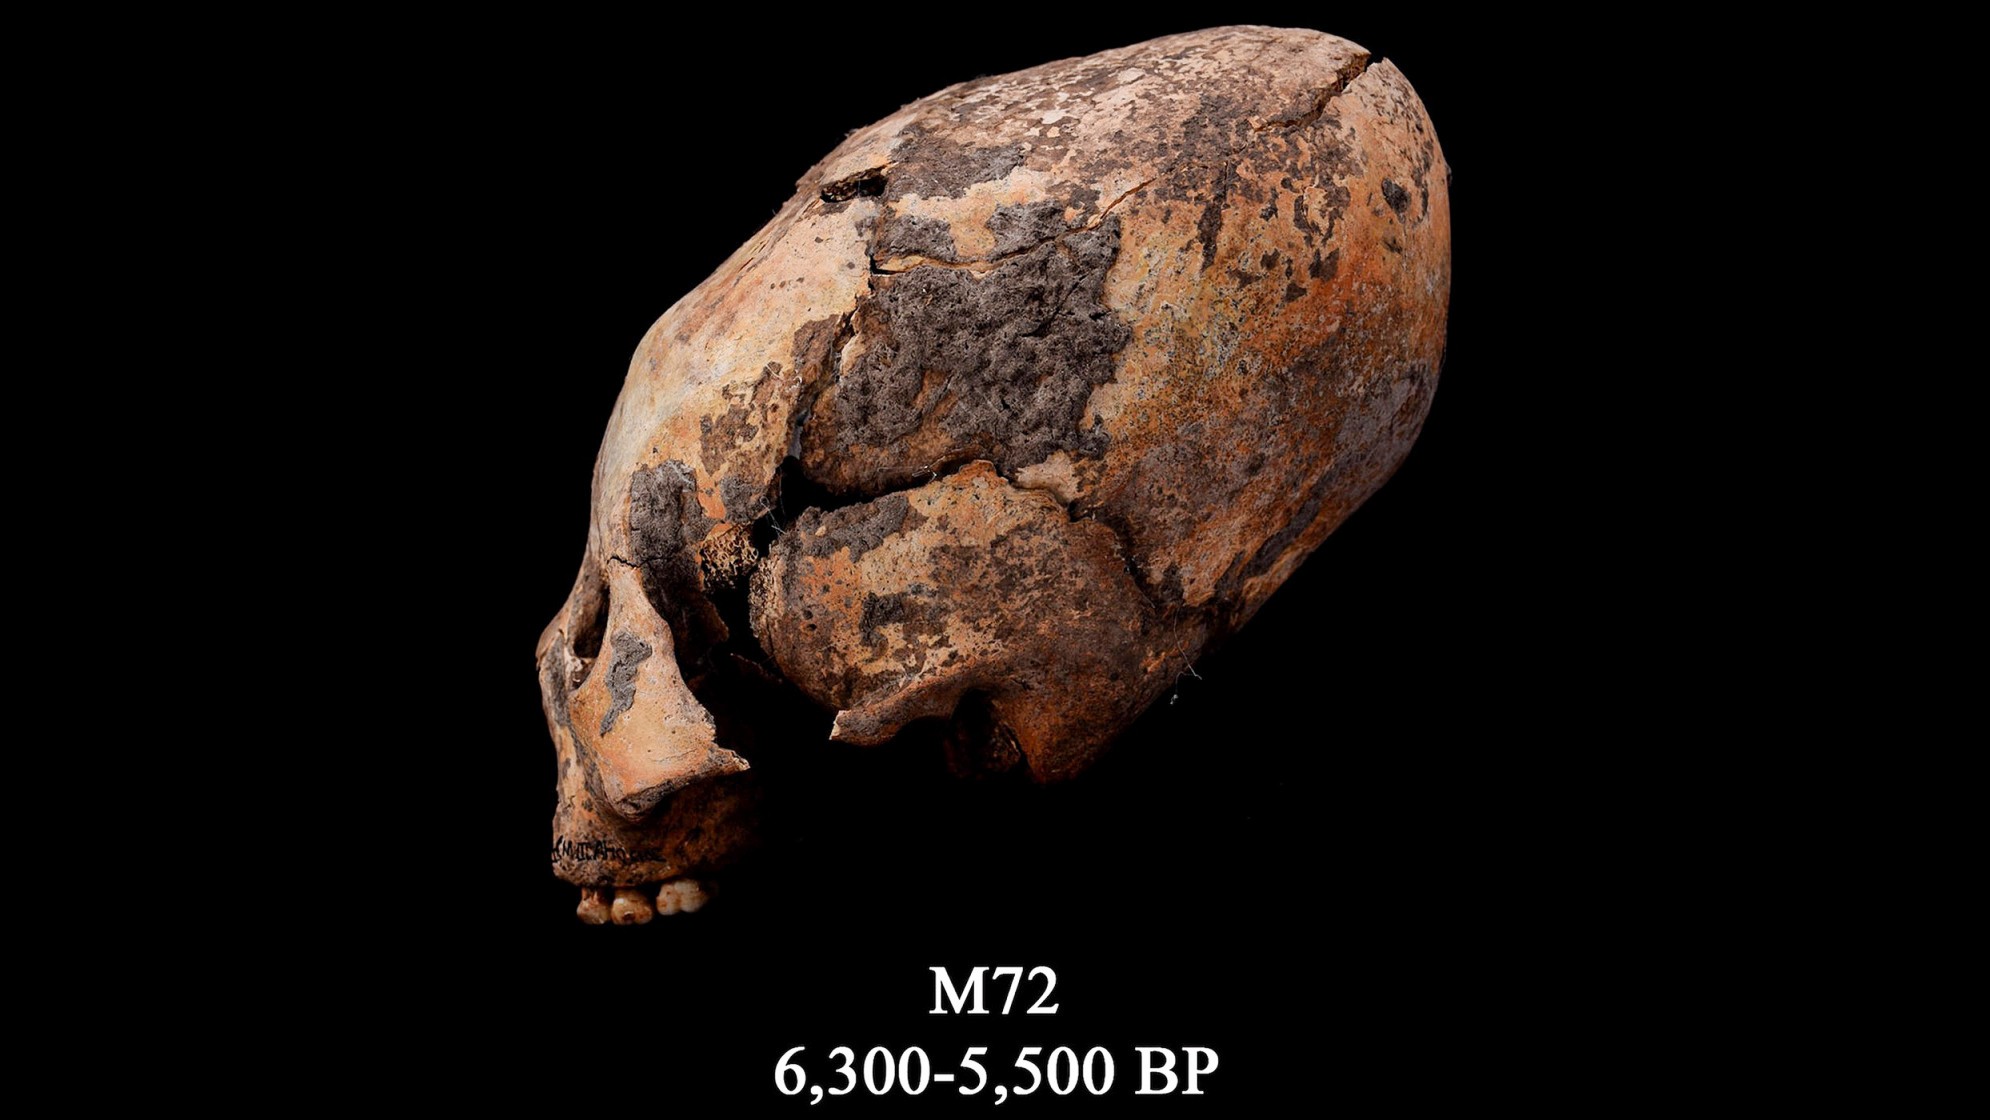 O crânio conhecido como M72. Este crânio humano remodelado foi encontrado no nordeste da China e foi modificado intencionalmente